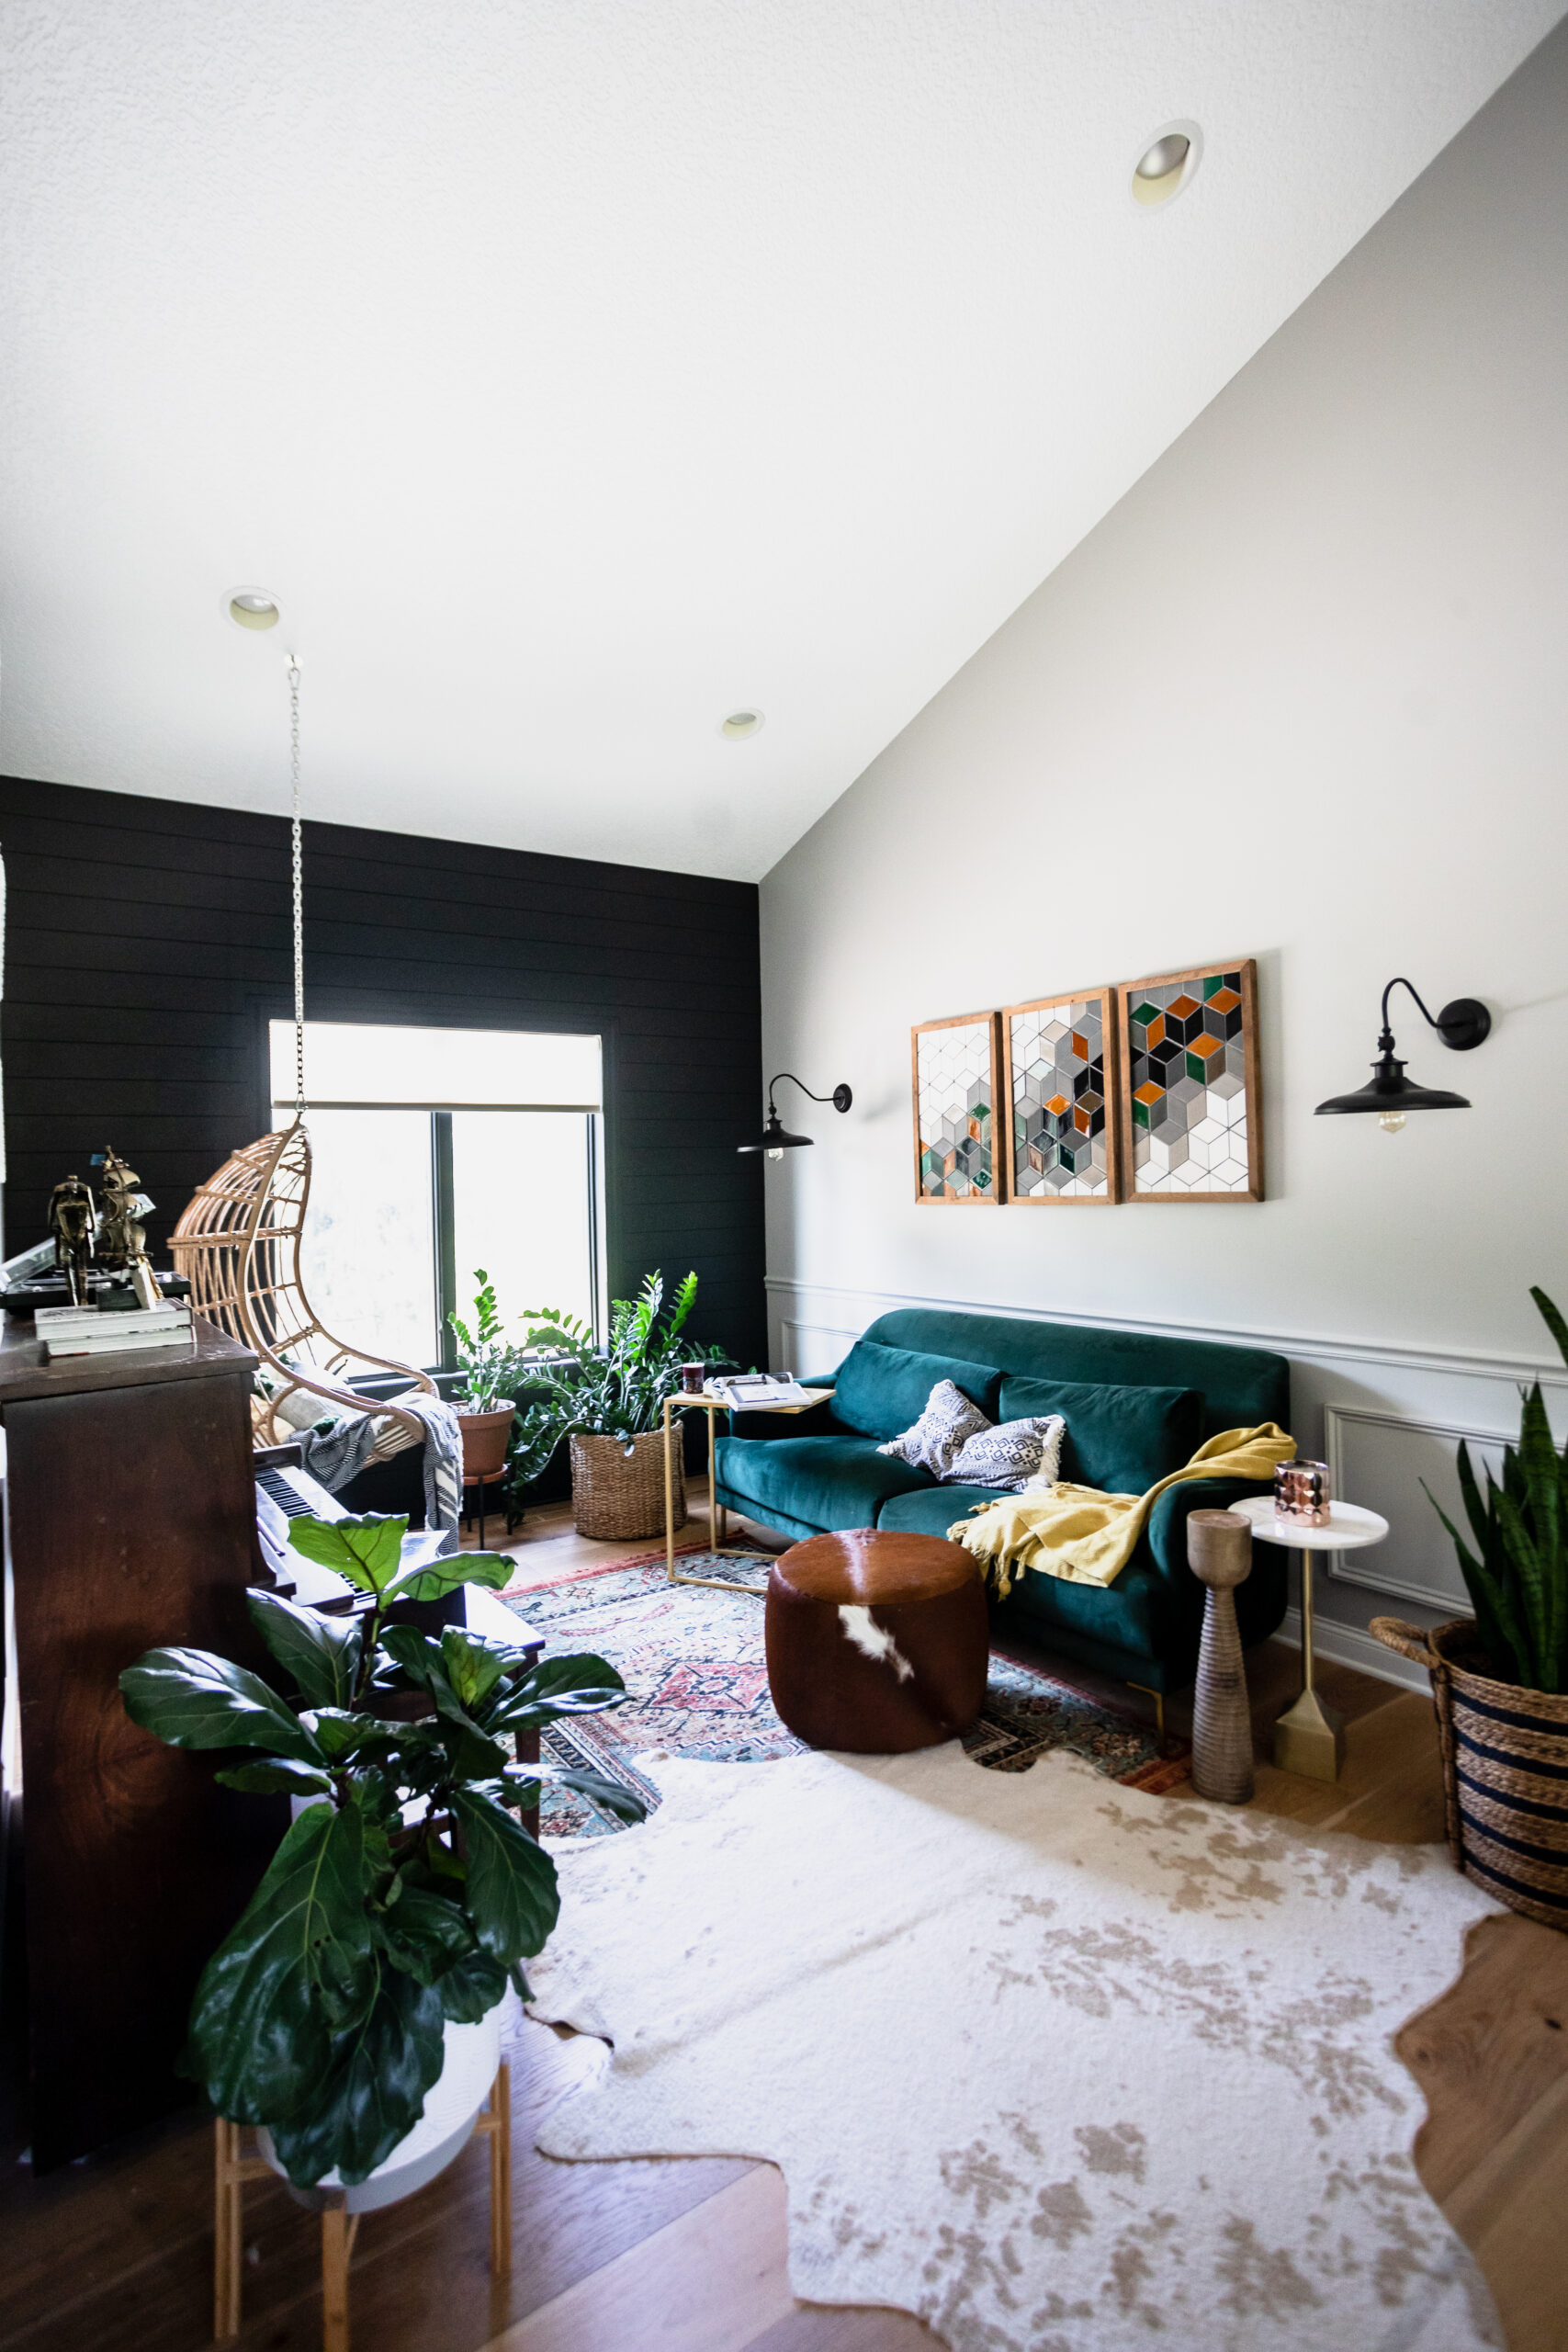 How to Arrange Living Room Furniture 3